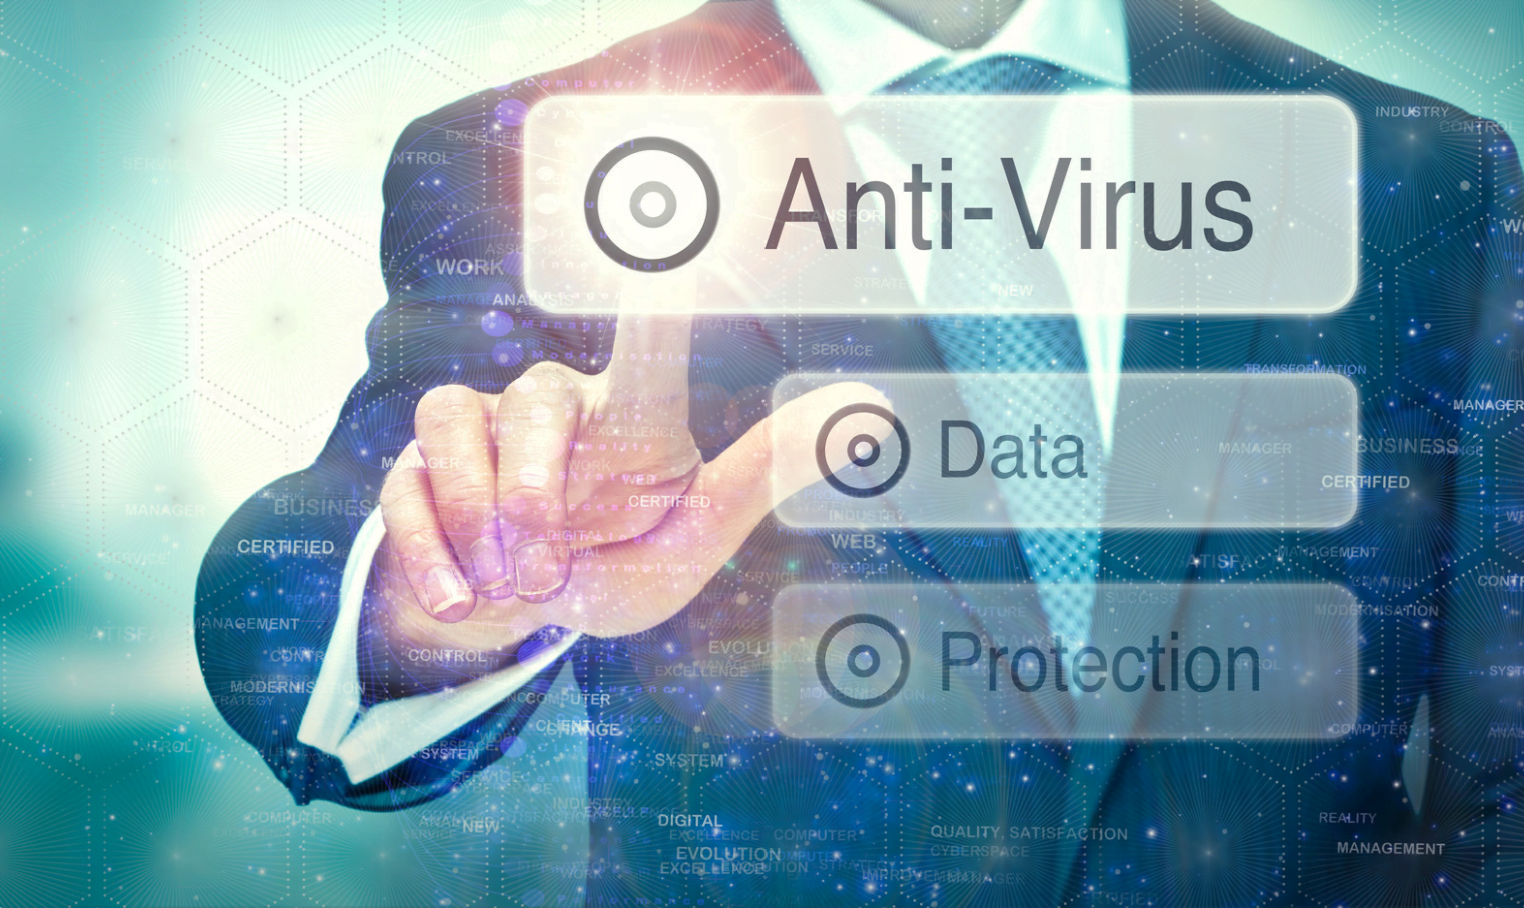 Antivírus empresarial Garanta a proteção dos dados do negócio